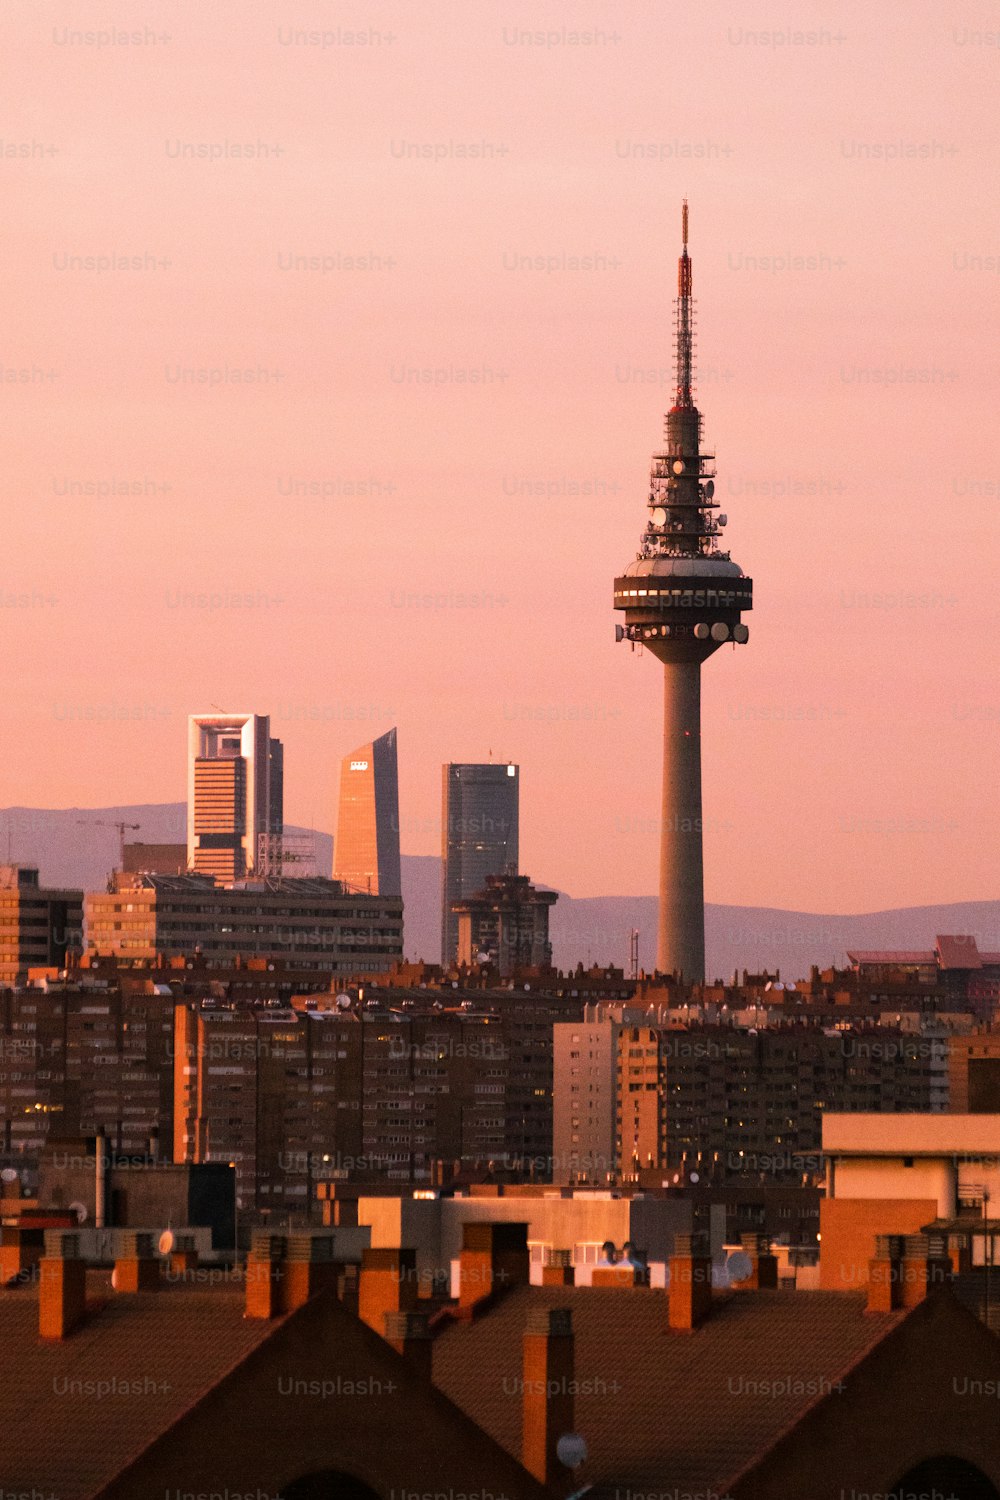 Un fantástico paisaje urbano vertical de Madrid con modernos rascacielos iluminados por el sol y una torre de televisión en el crepúsculo